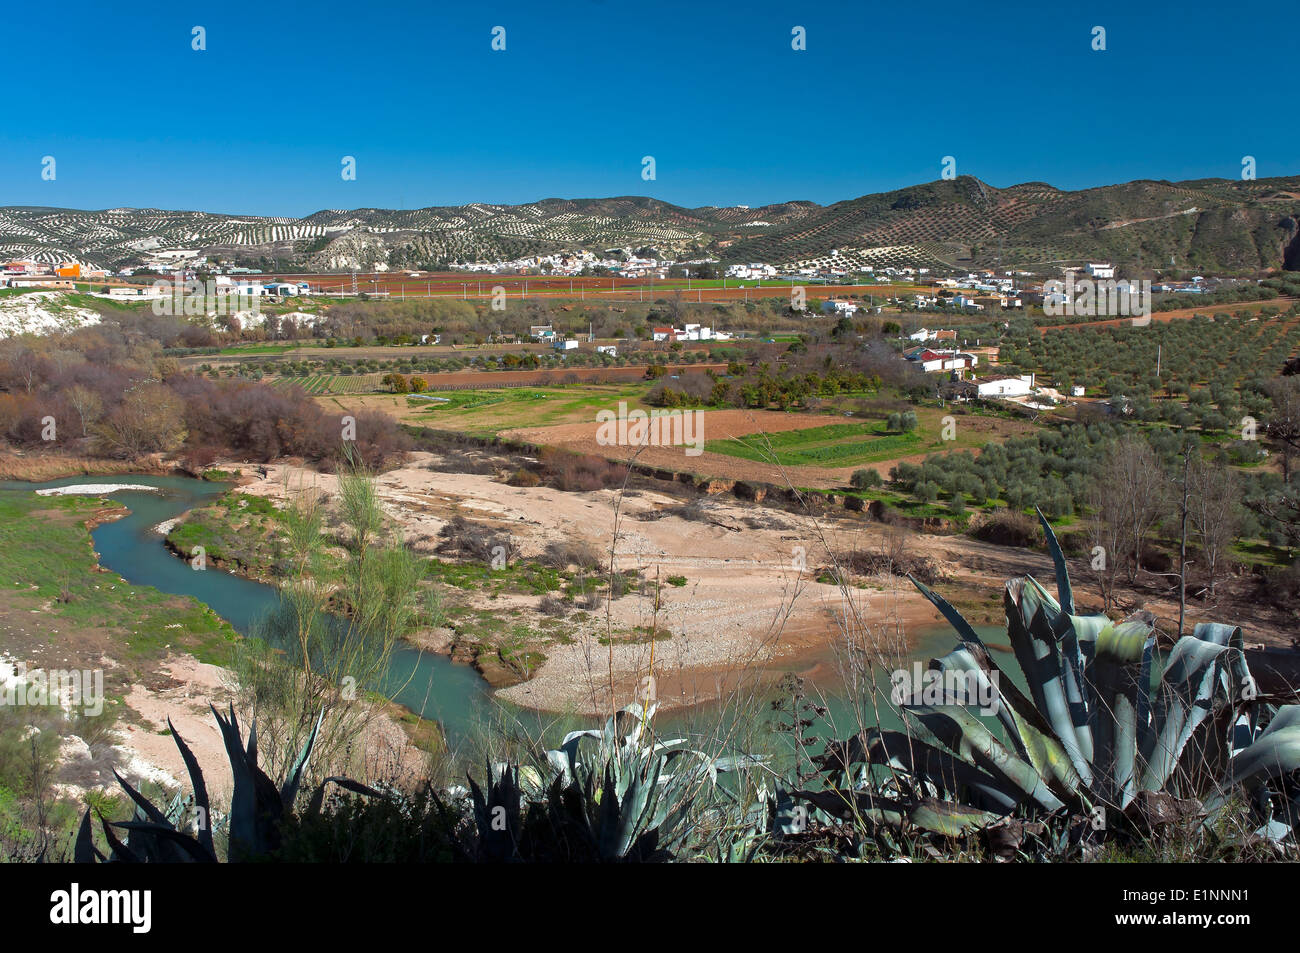 Vista panoramica e il fiume Genil, il percorso turistico dei banditi, jauja, in provincia di Cordoba, regione dell'Andalusia, Spagna, Europa Foto Stock